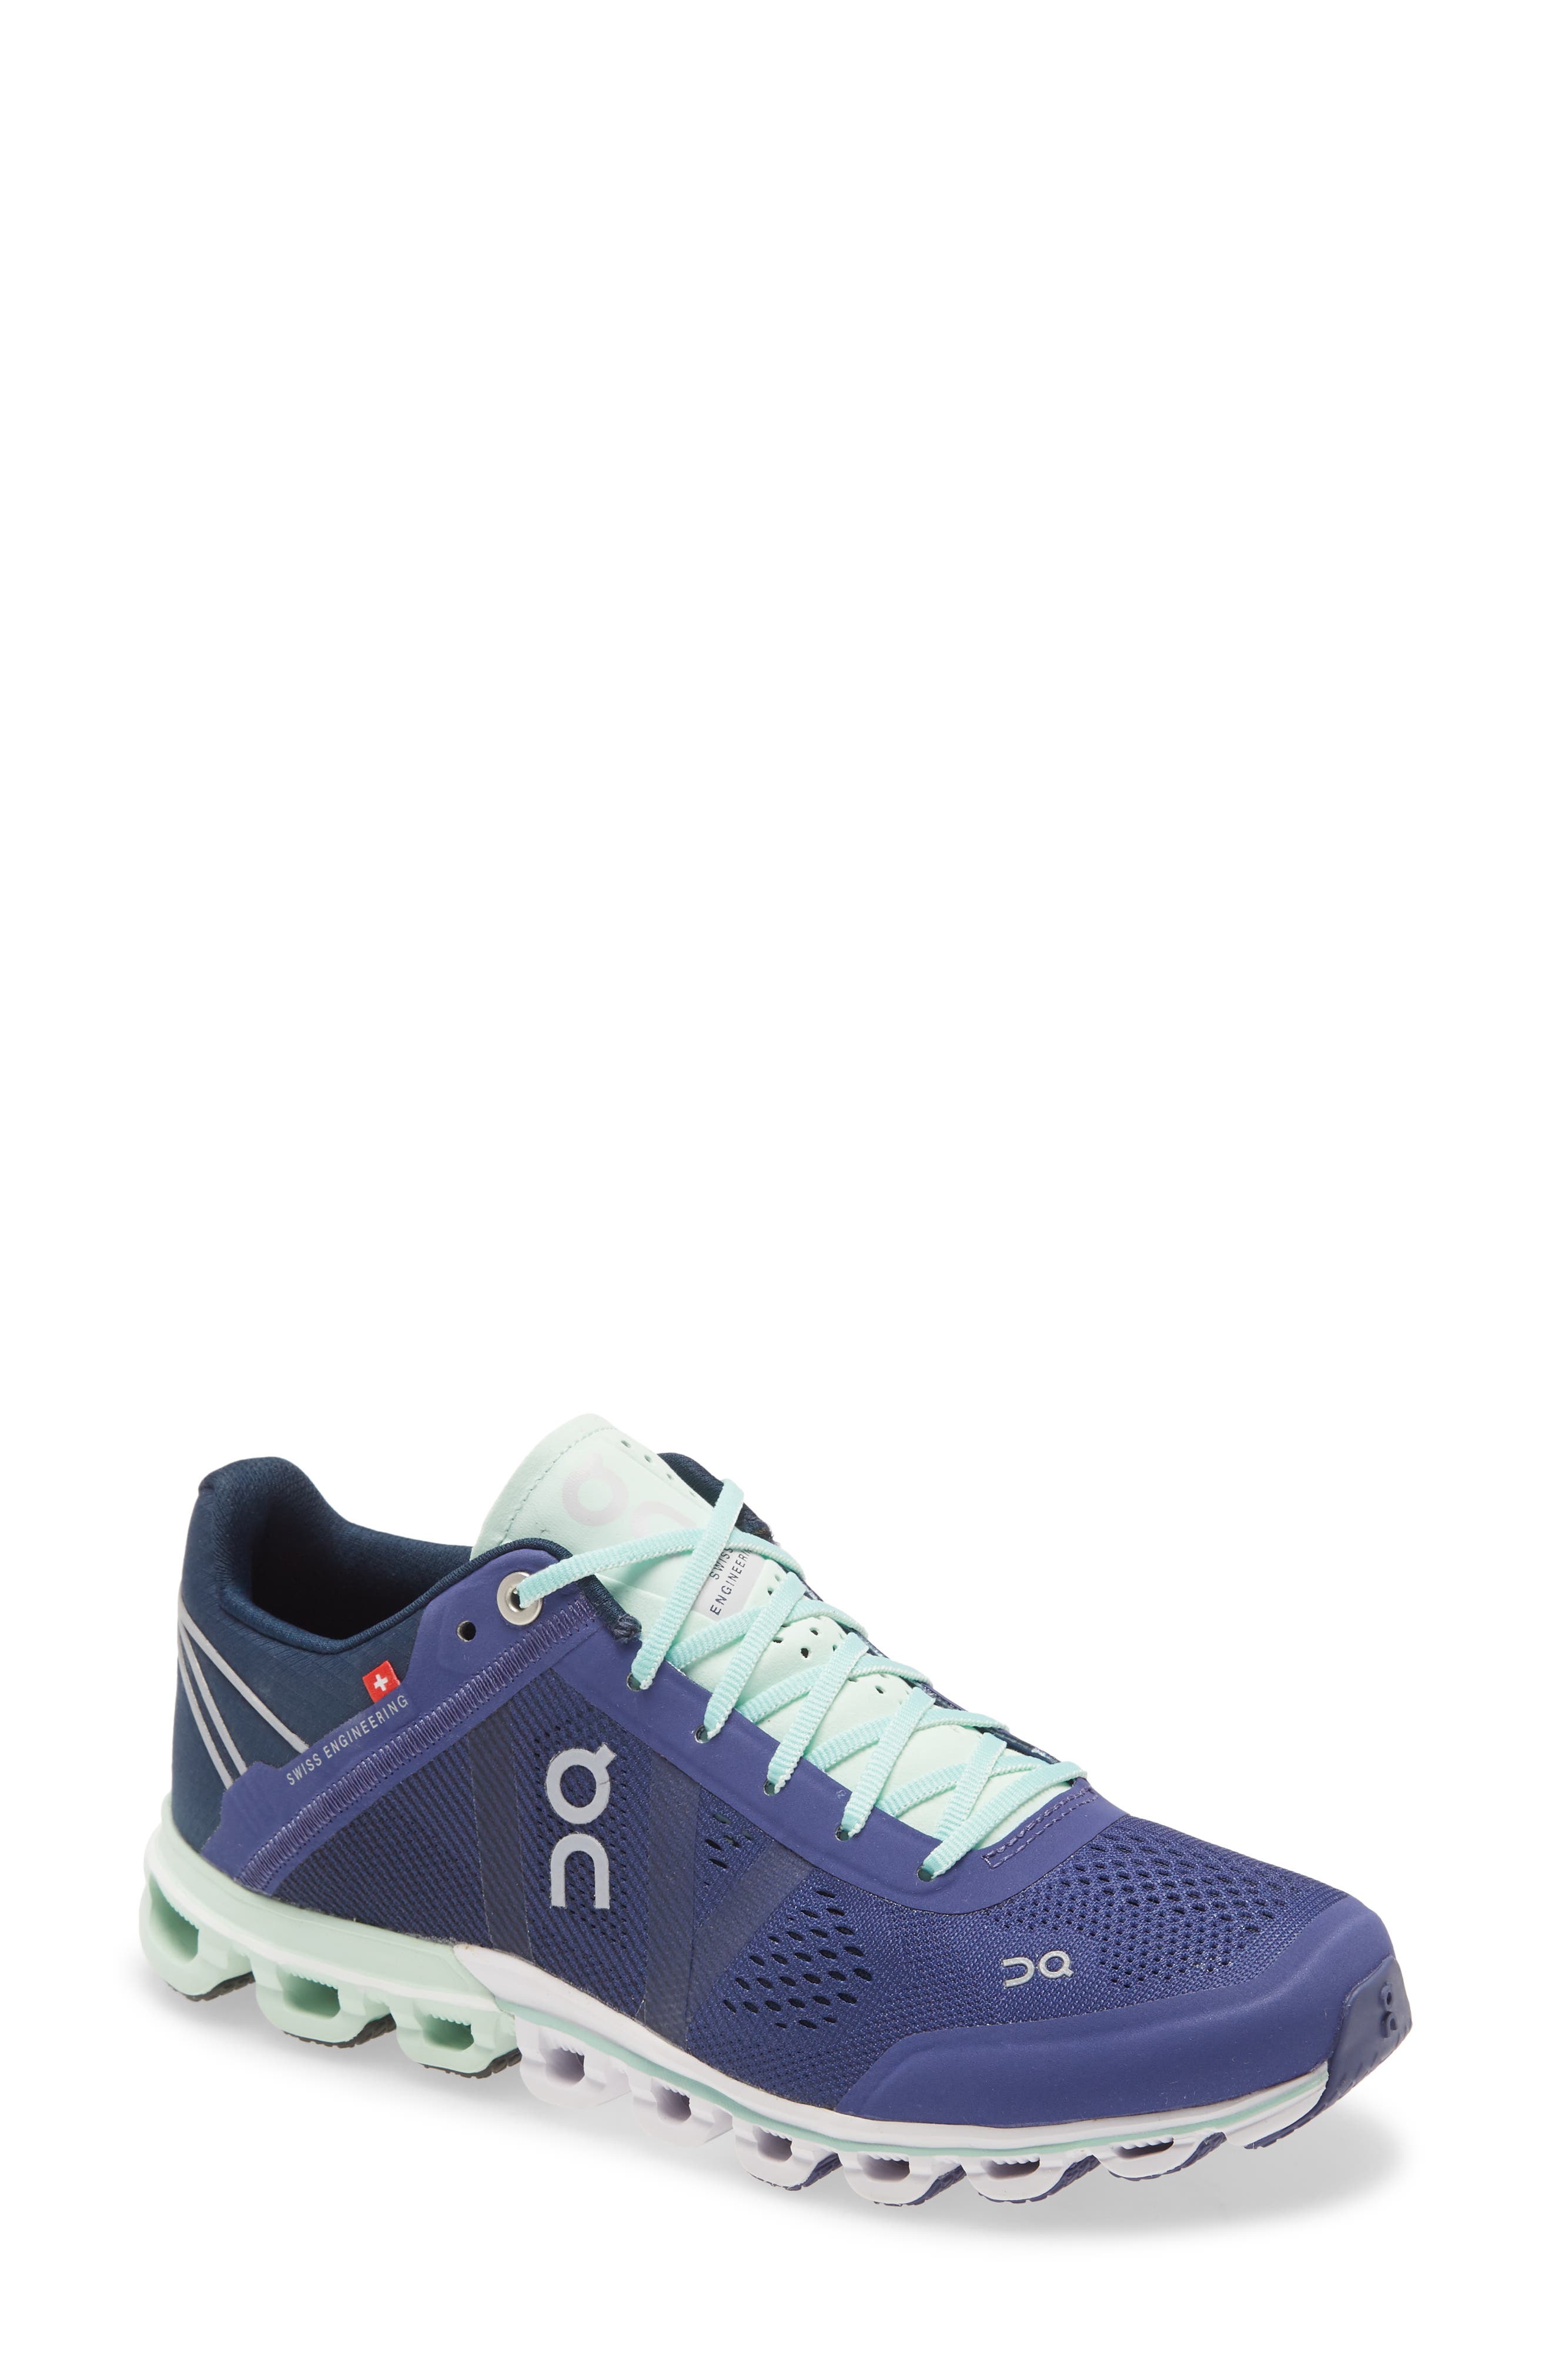 ceil blue tennis shoes